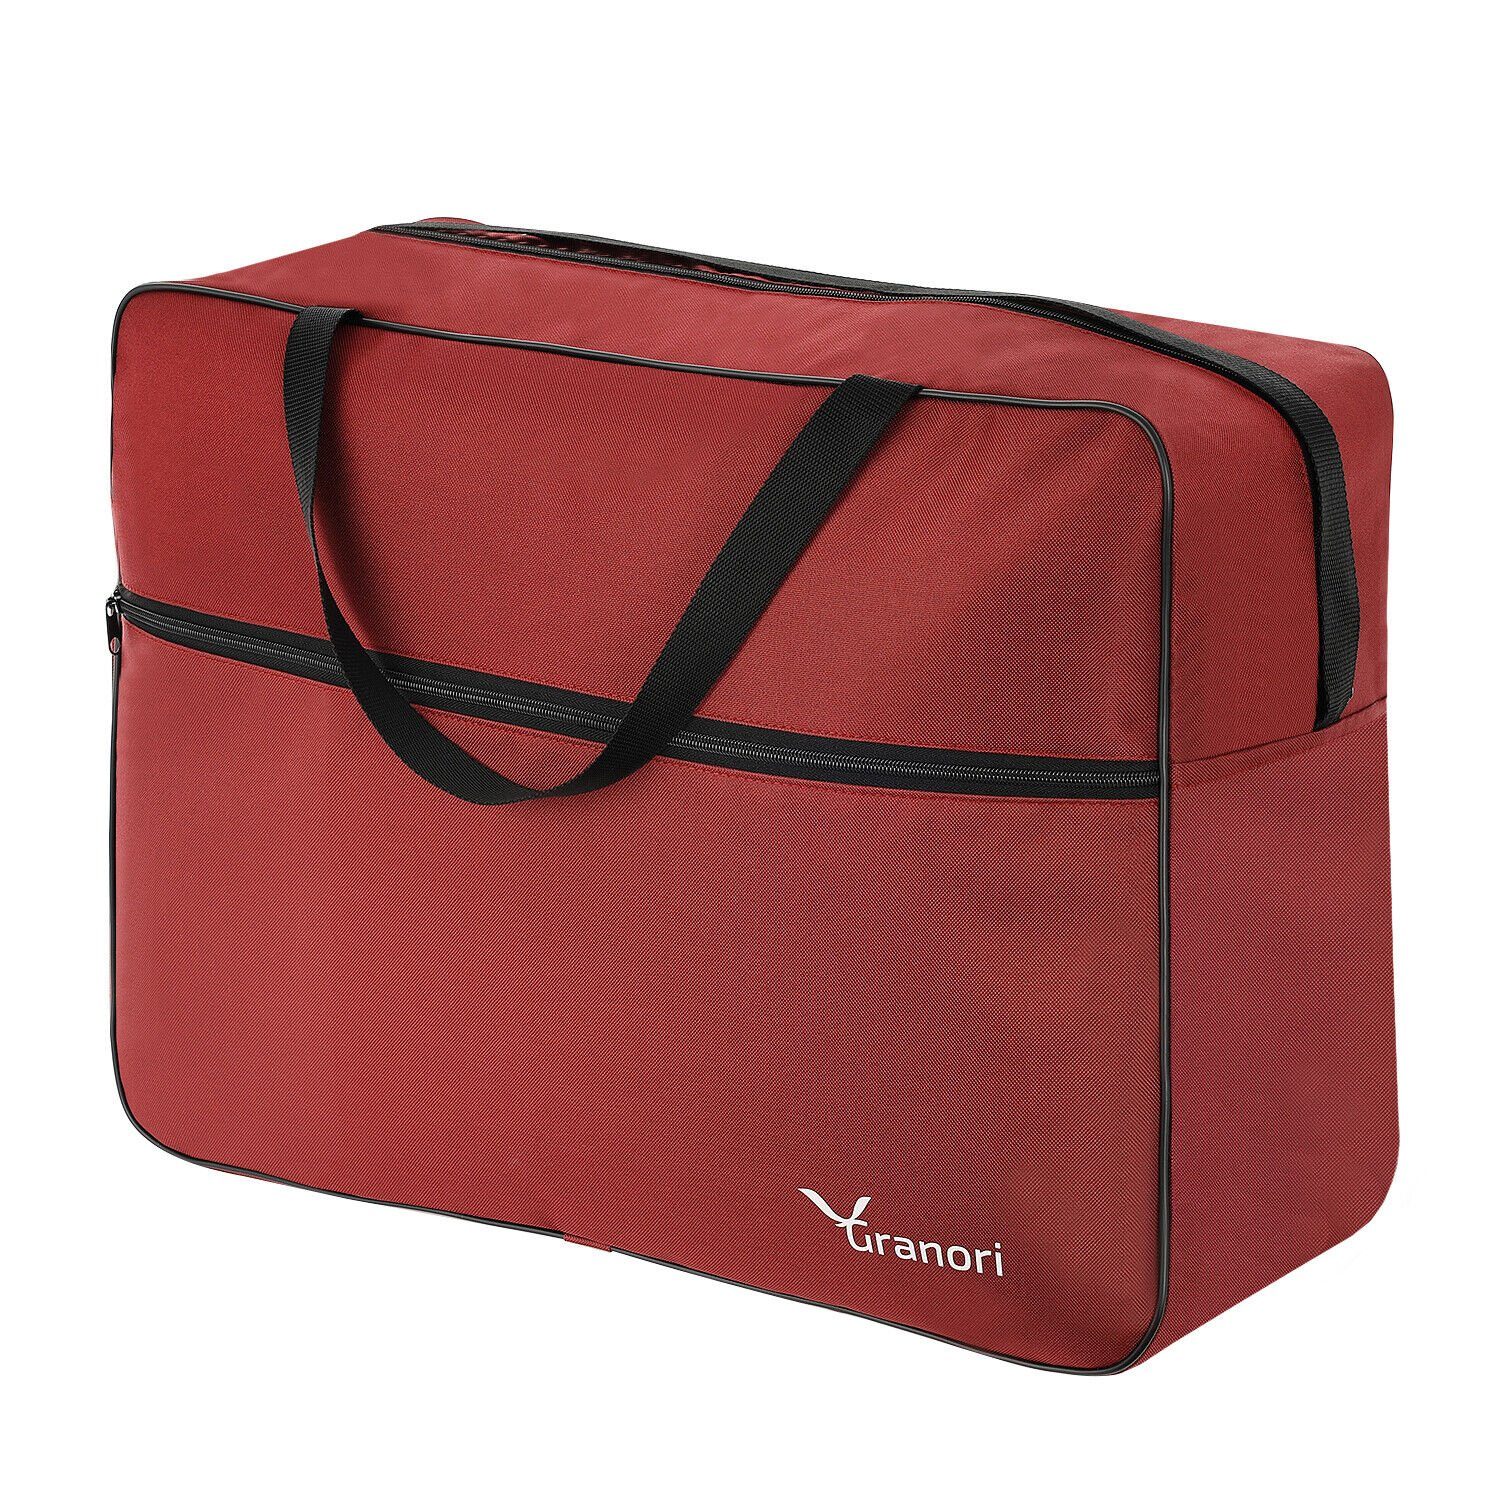 Granori Reisetasche 55x40x20 cm großes Handgepäck mit Schultergurt – leicht & viel Platz (über 40 l Fassungsvermögen), entspricht IATA Empfehlungen für Flugzeug-Kabinengepäck Rot